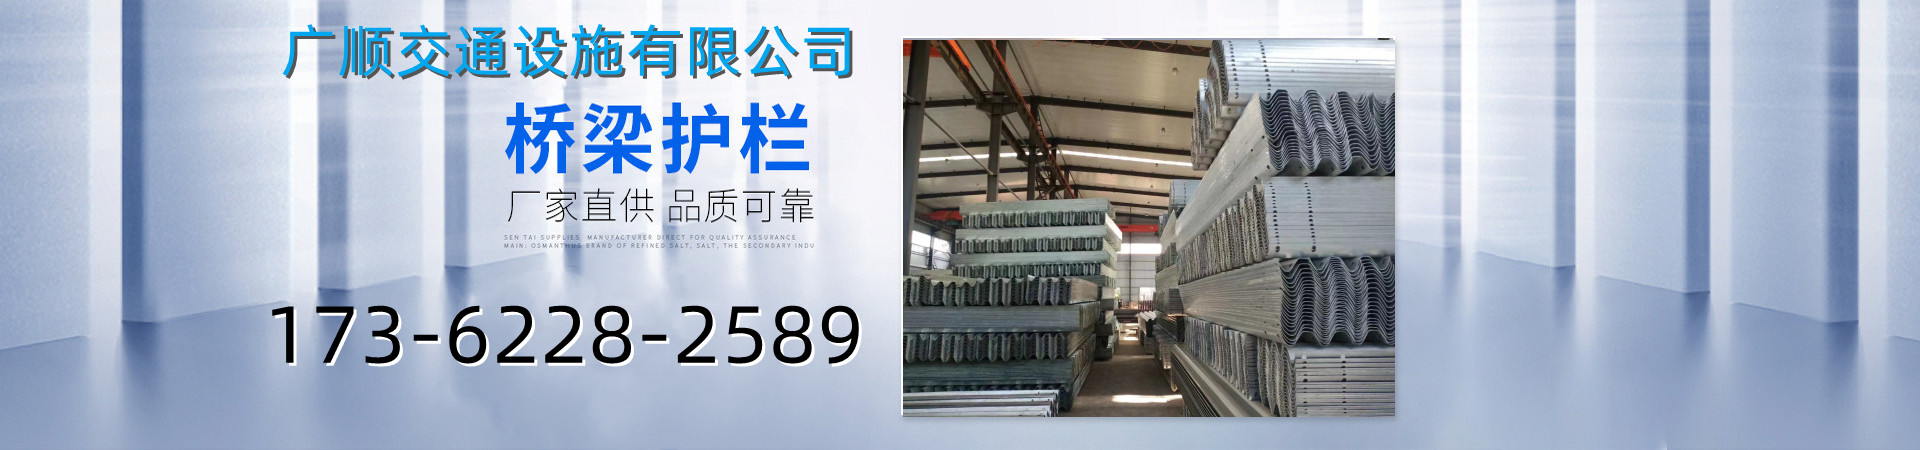 波形护栏生产厂家、重庆本地波形护栏生产厂家、重庆、重庆波形护栏生产厂家